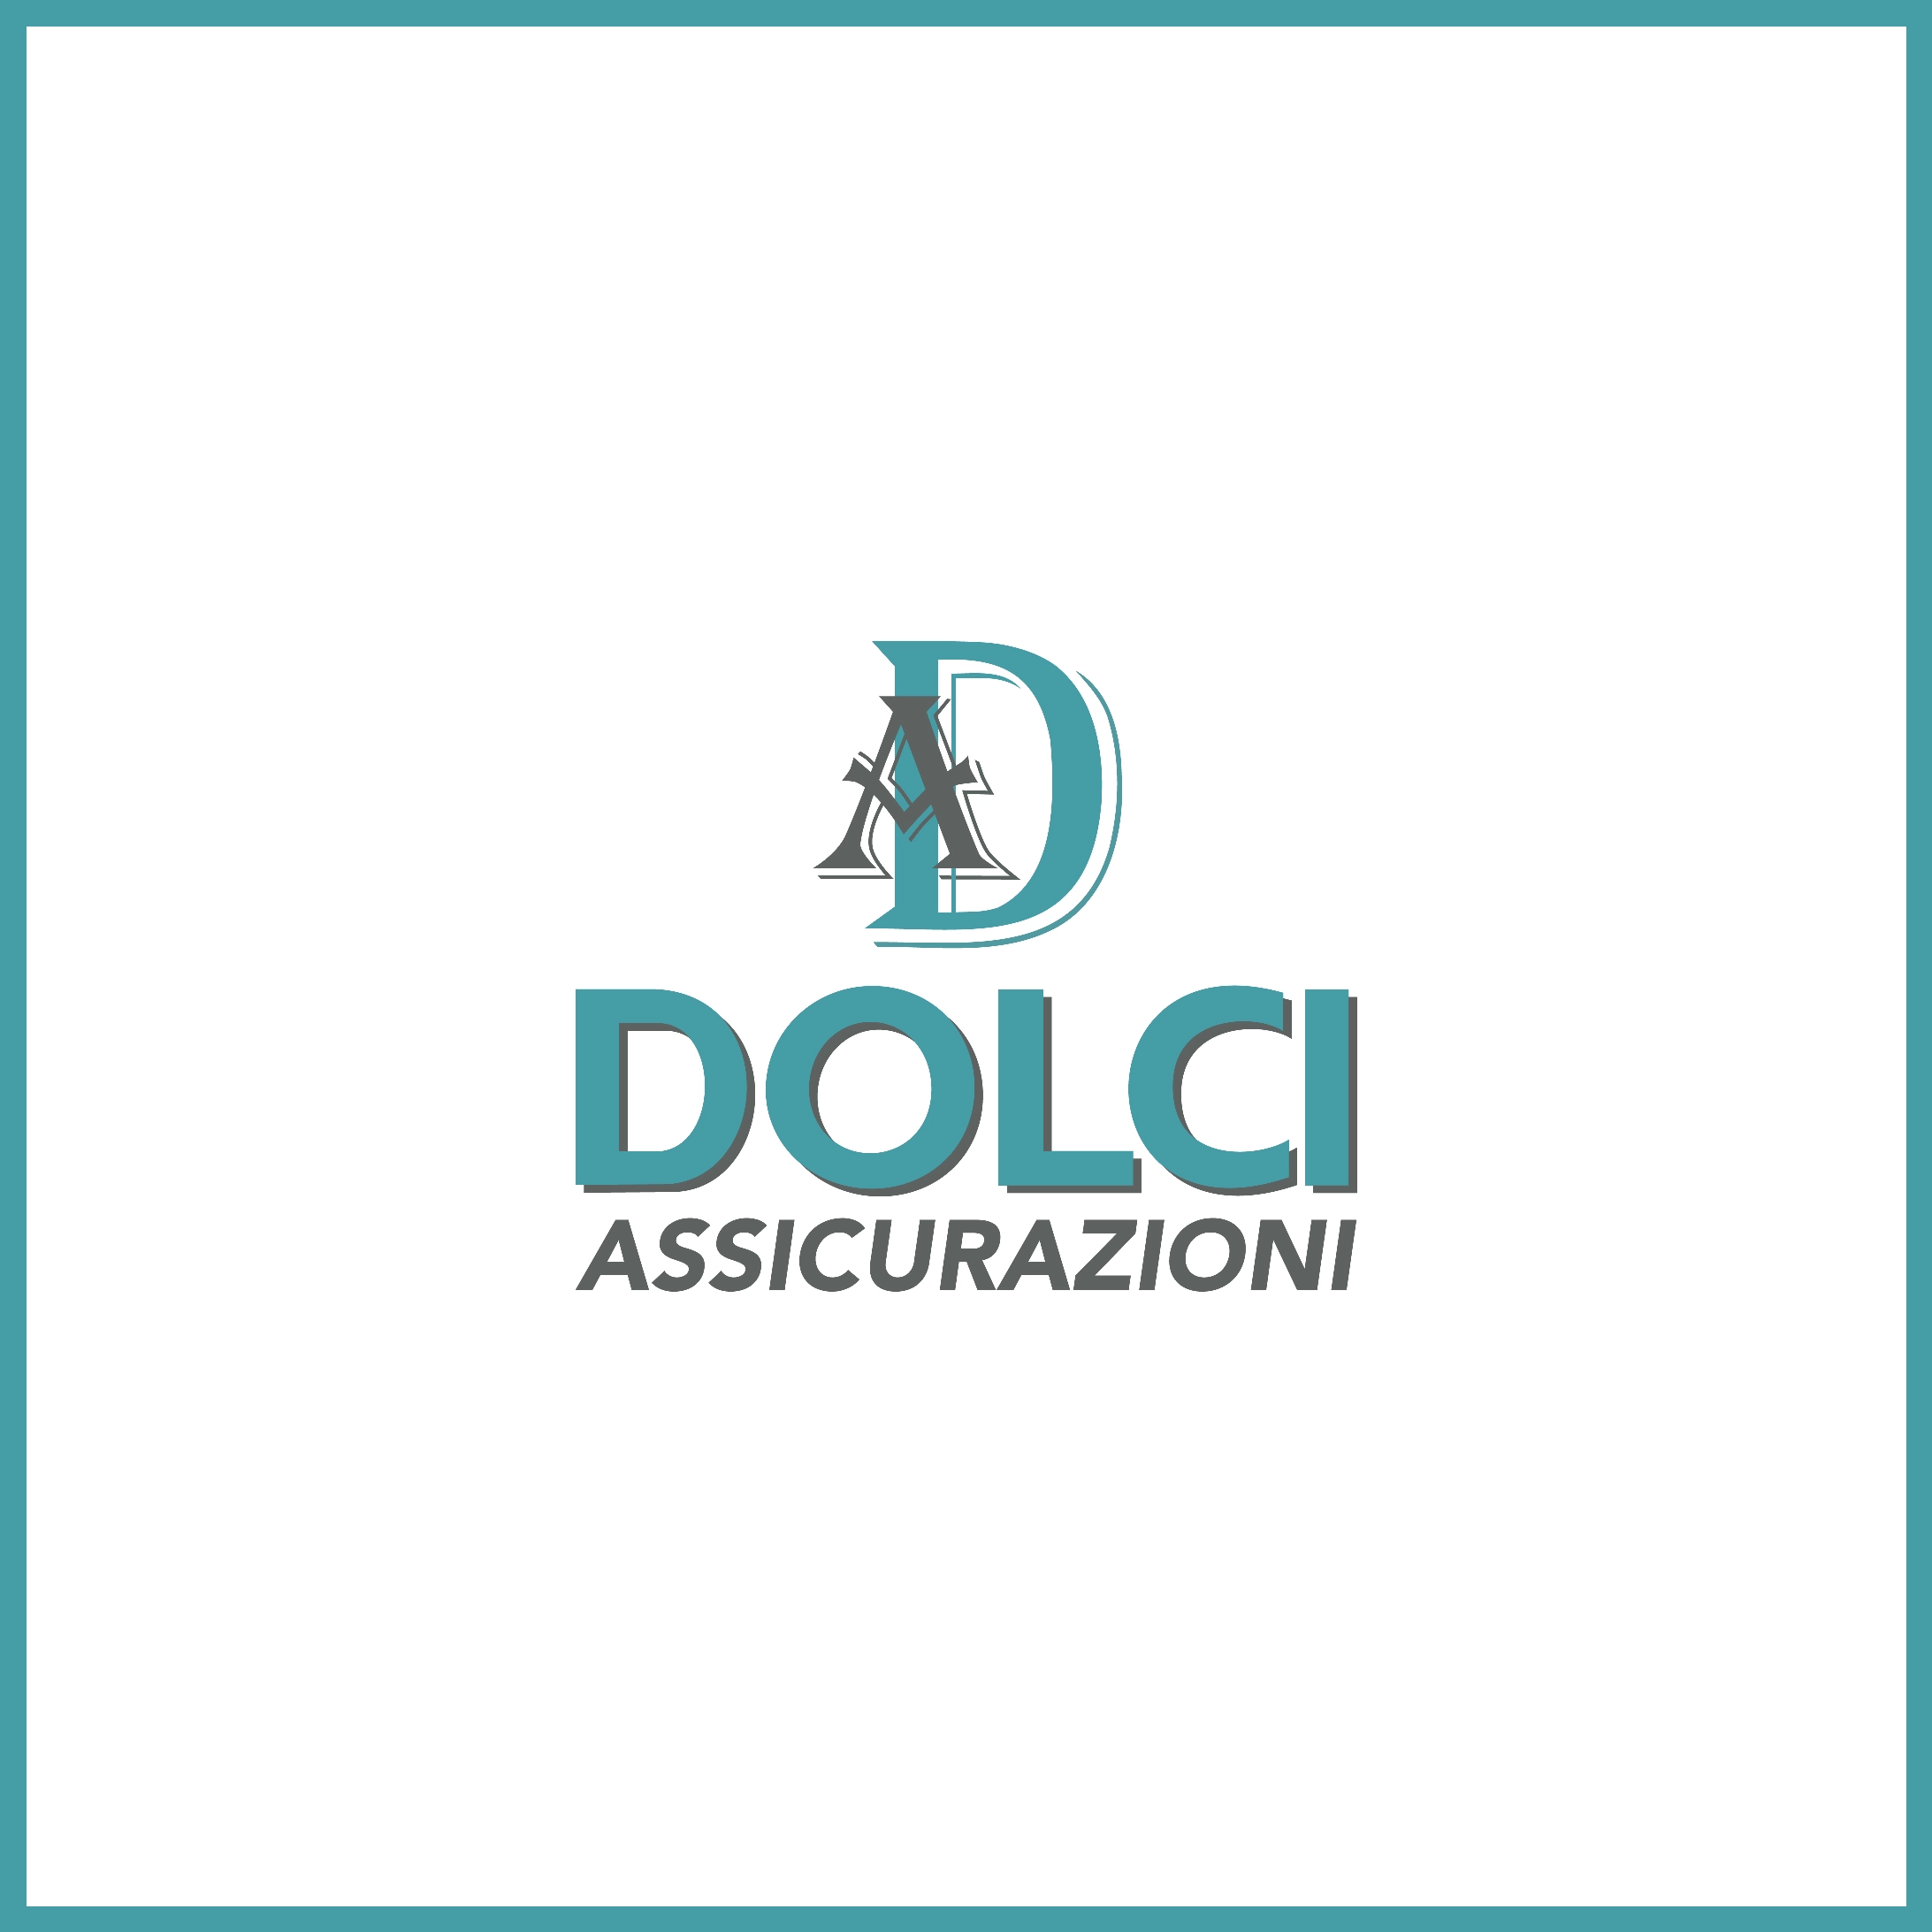 (c) Dolci-assicurazioni.com